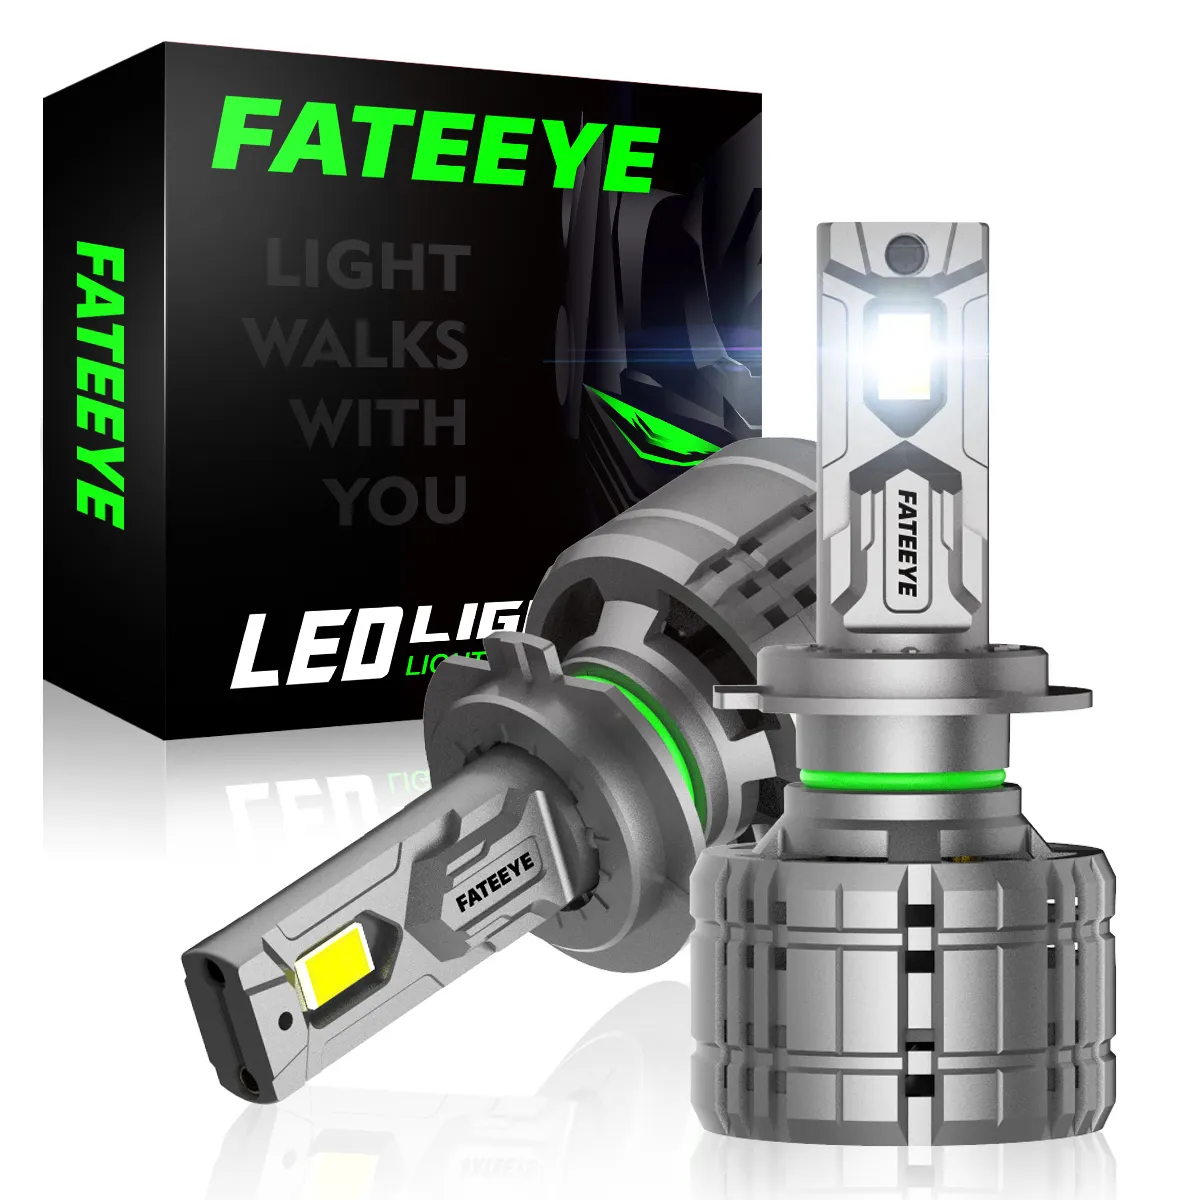 Fateeye LED farlar 200W 40000LM LED lamba Auto LED araba ışıkları H3 H4 H7 H11 9004 9005 9006 9007 LED far lambaları için otomatik